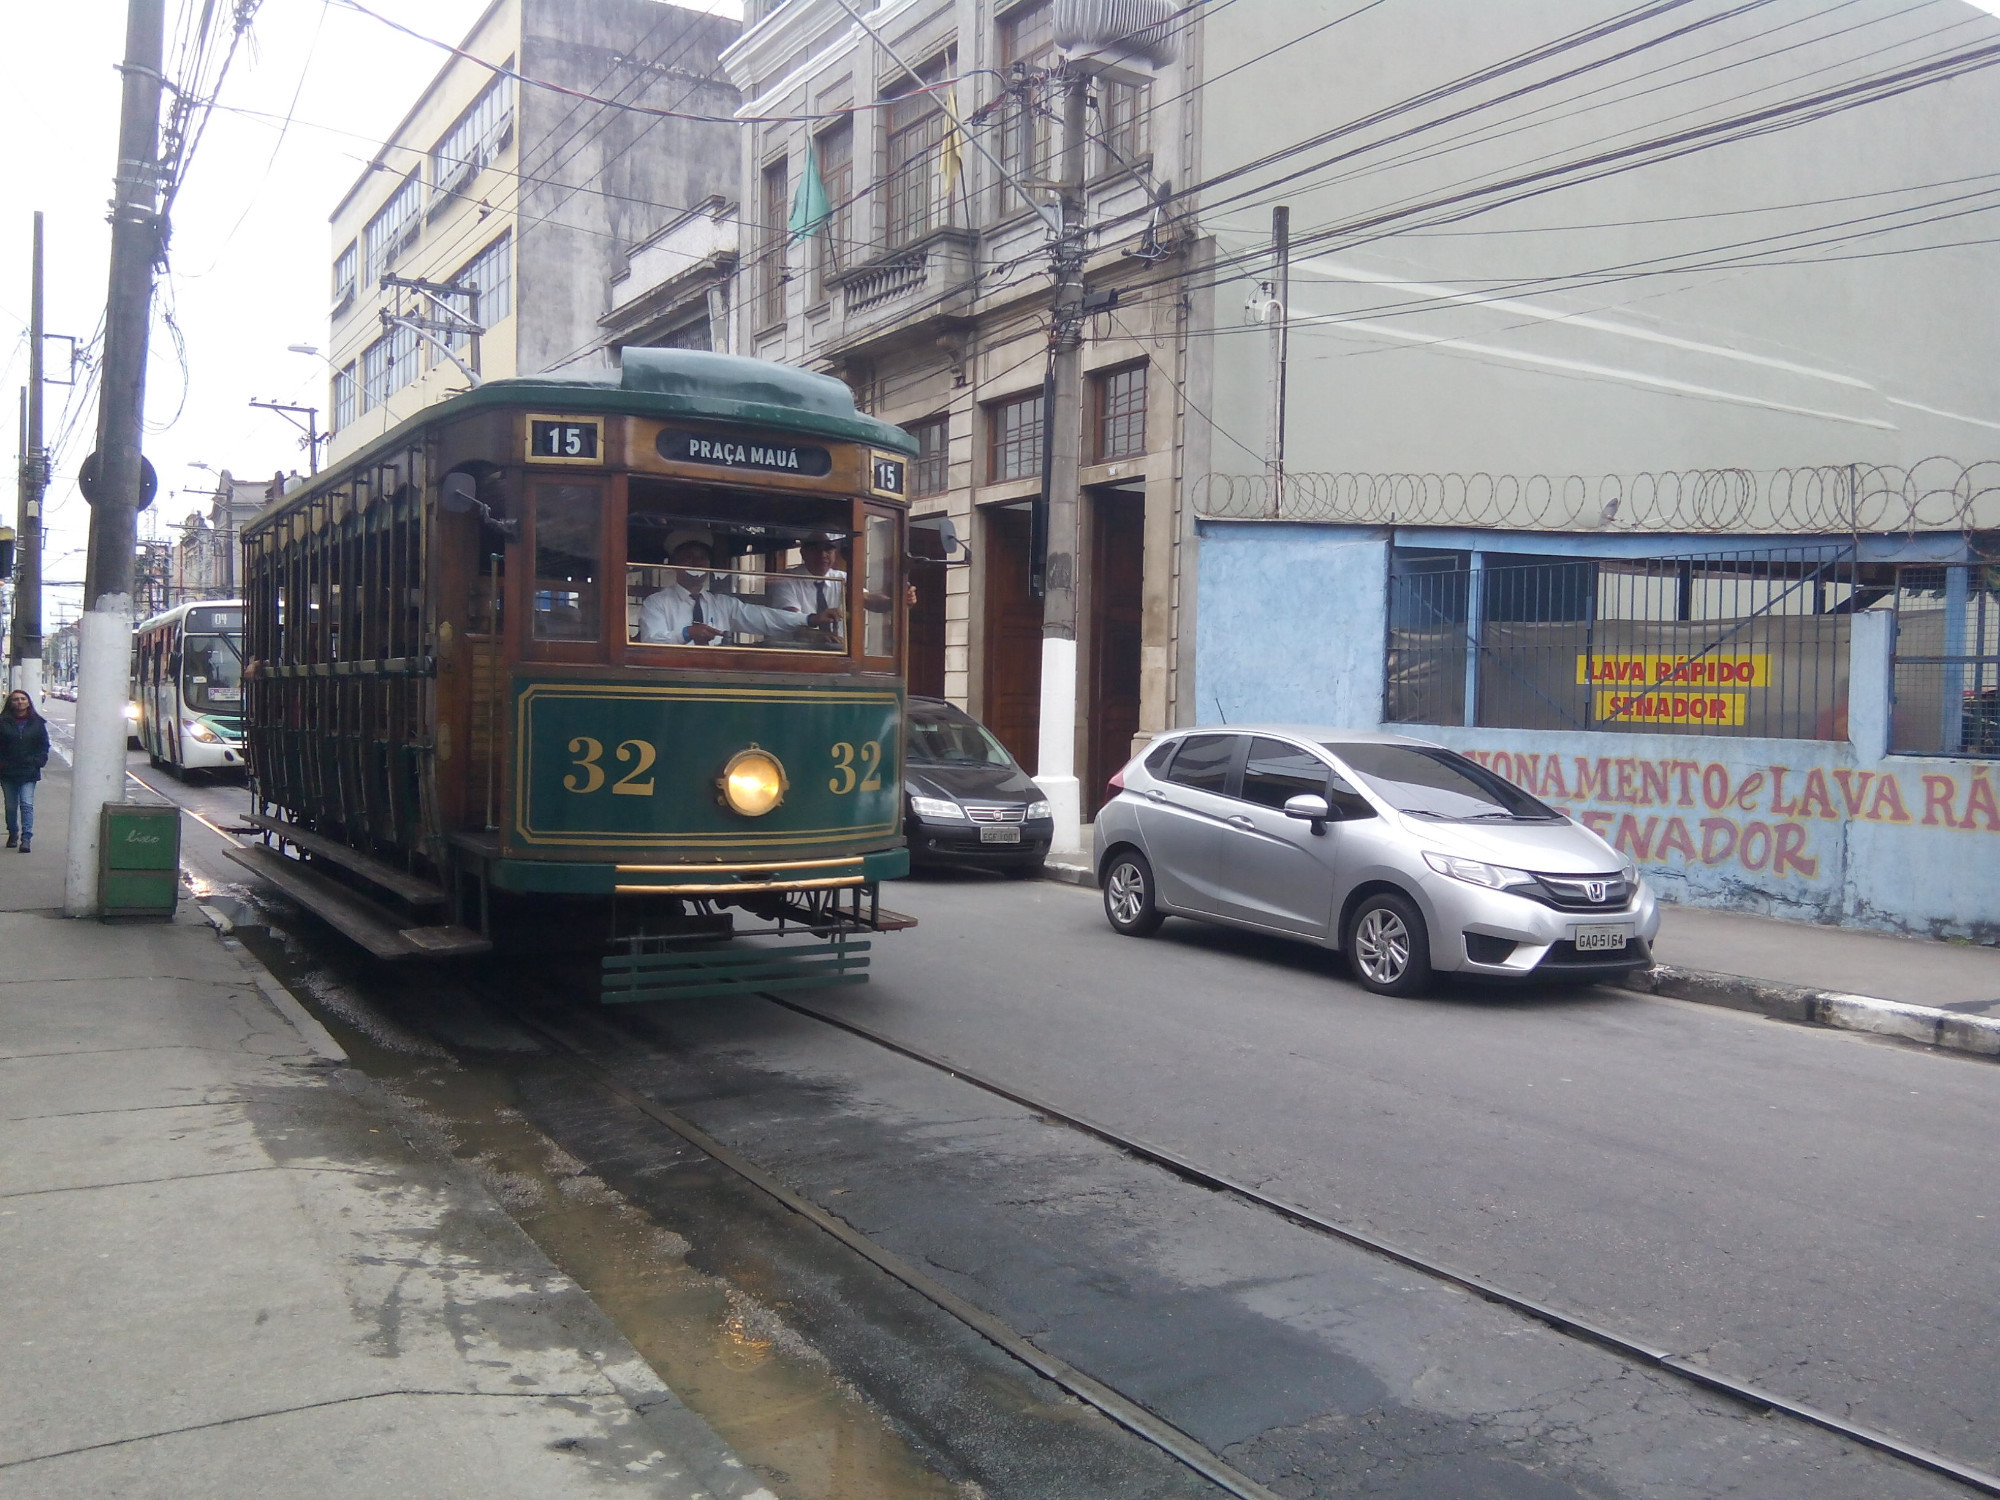 Tourist tram in Santos (Brazil)